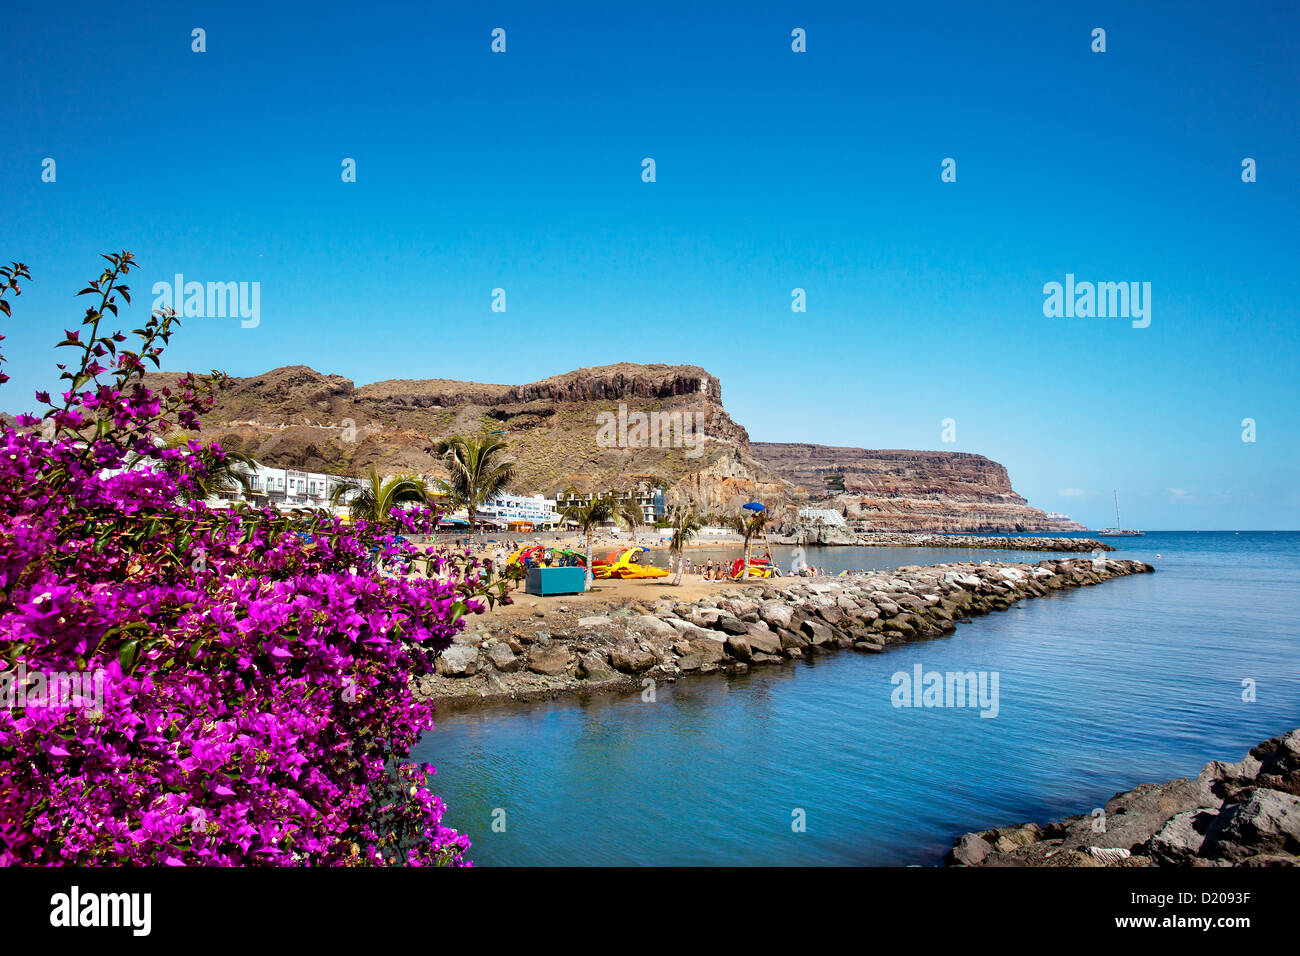 Blumen an der Küste unter blauem Himmel, Puerto de Mogan, Gran Canaria, Kanarische Inseln, Spanien, Europa Stockfoto